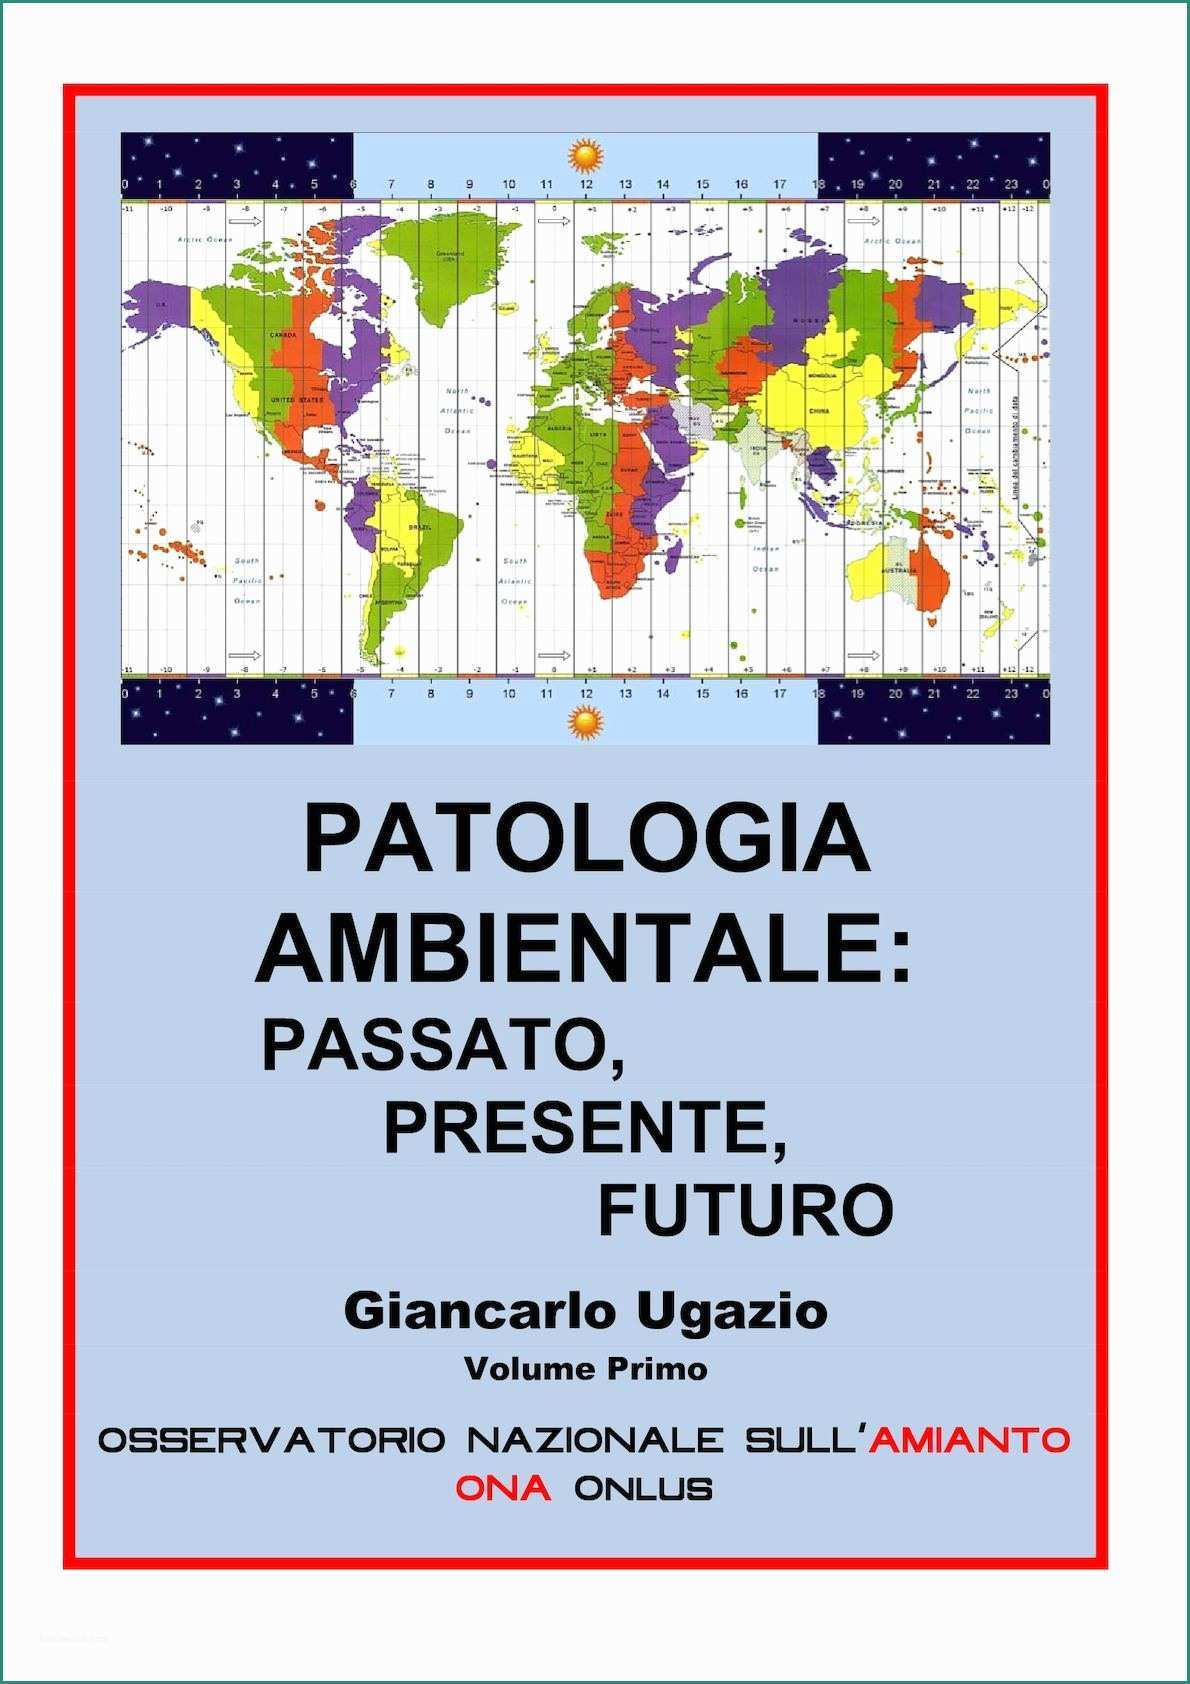 Acqua Alcalina In Bottiglia Marche E Calaméo Ugazio Patologia Ambientale Vol I